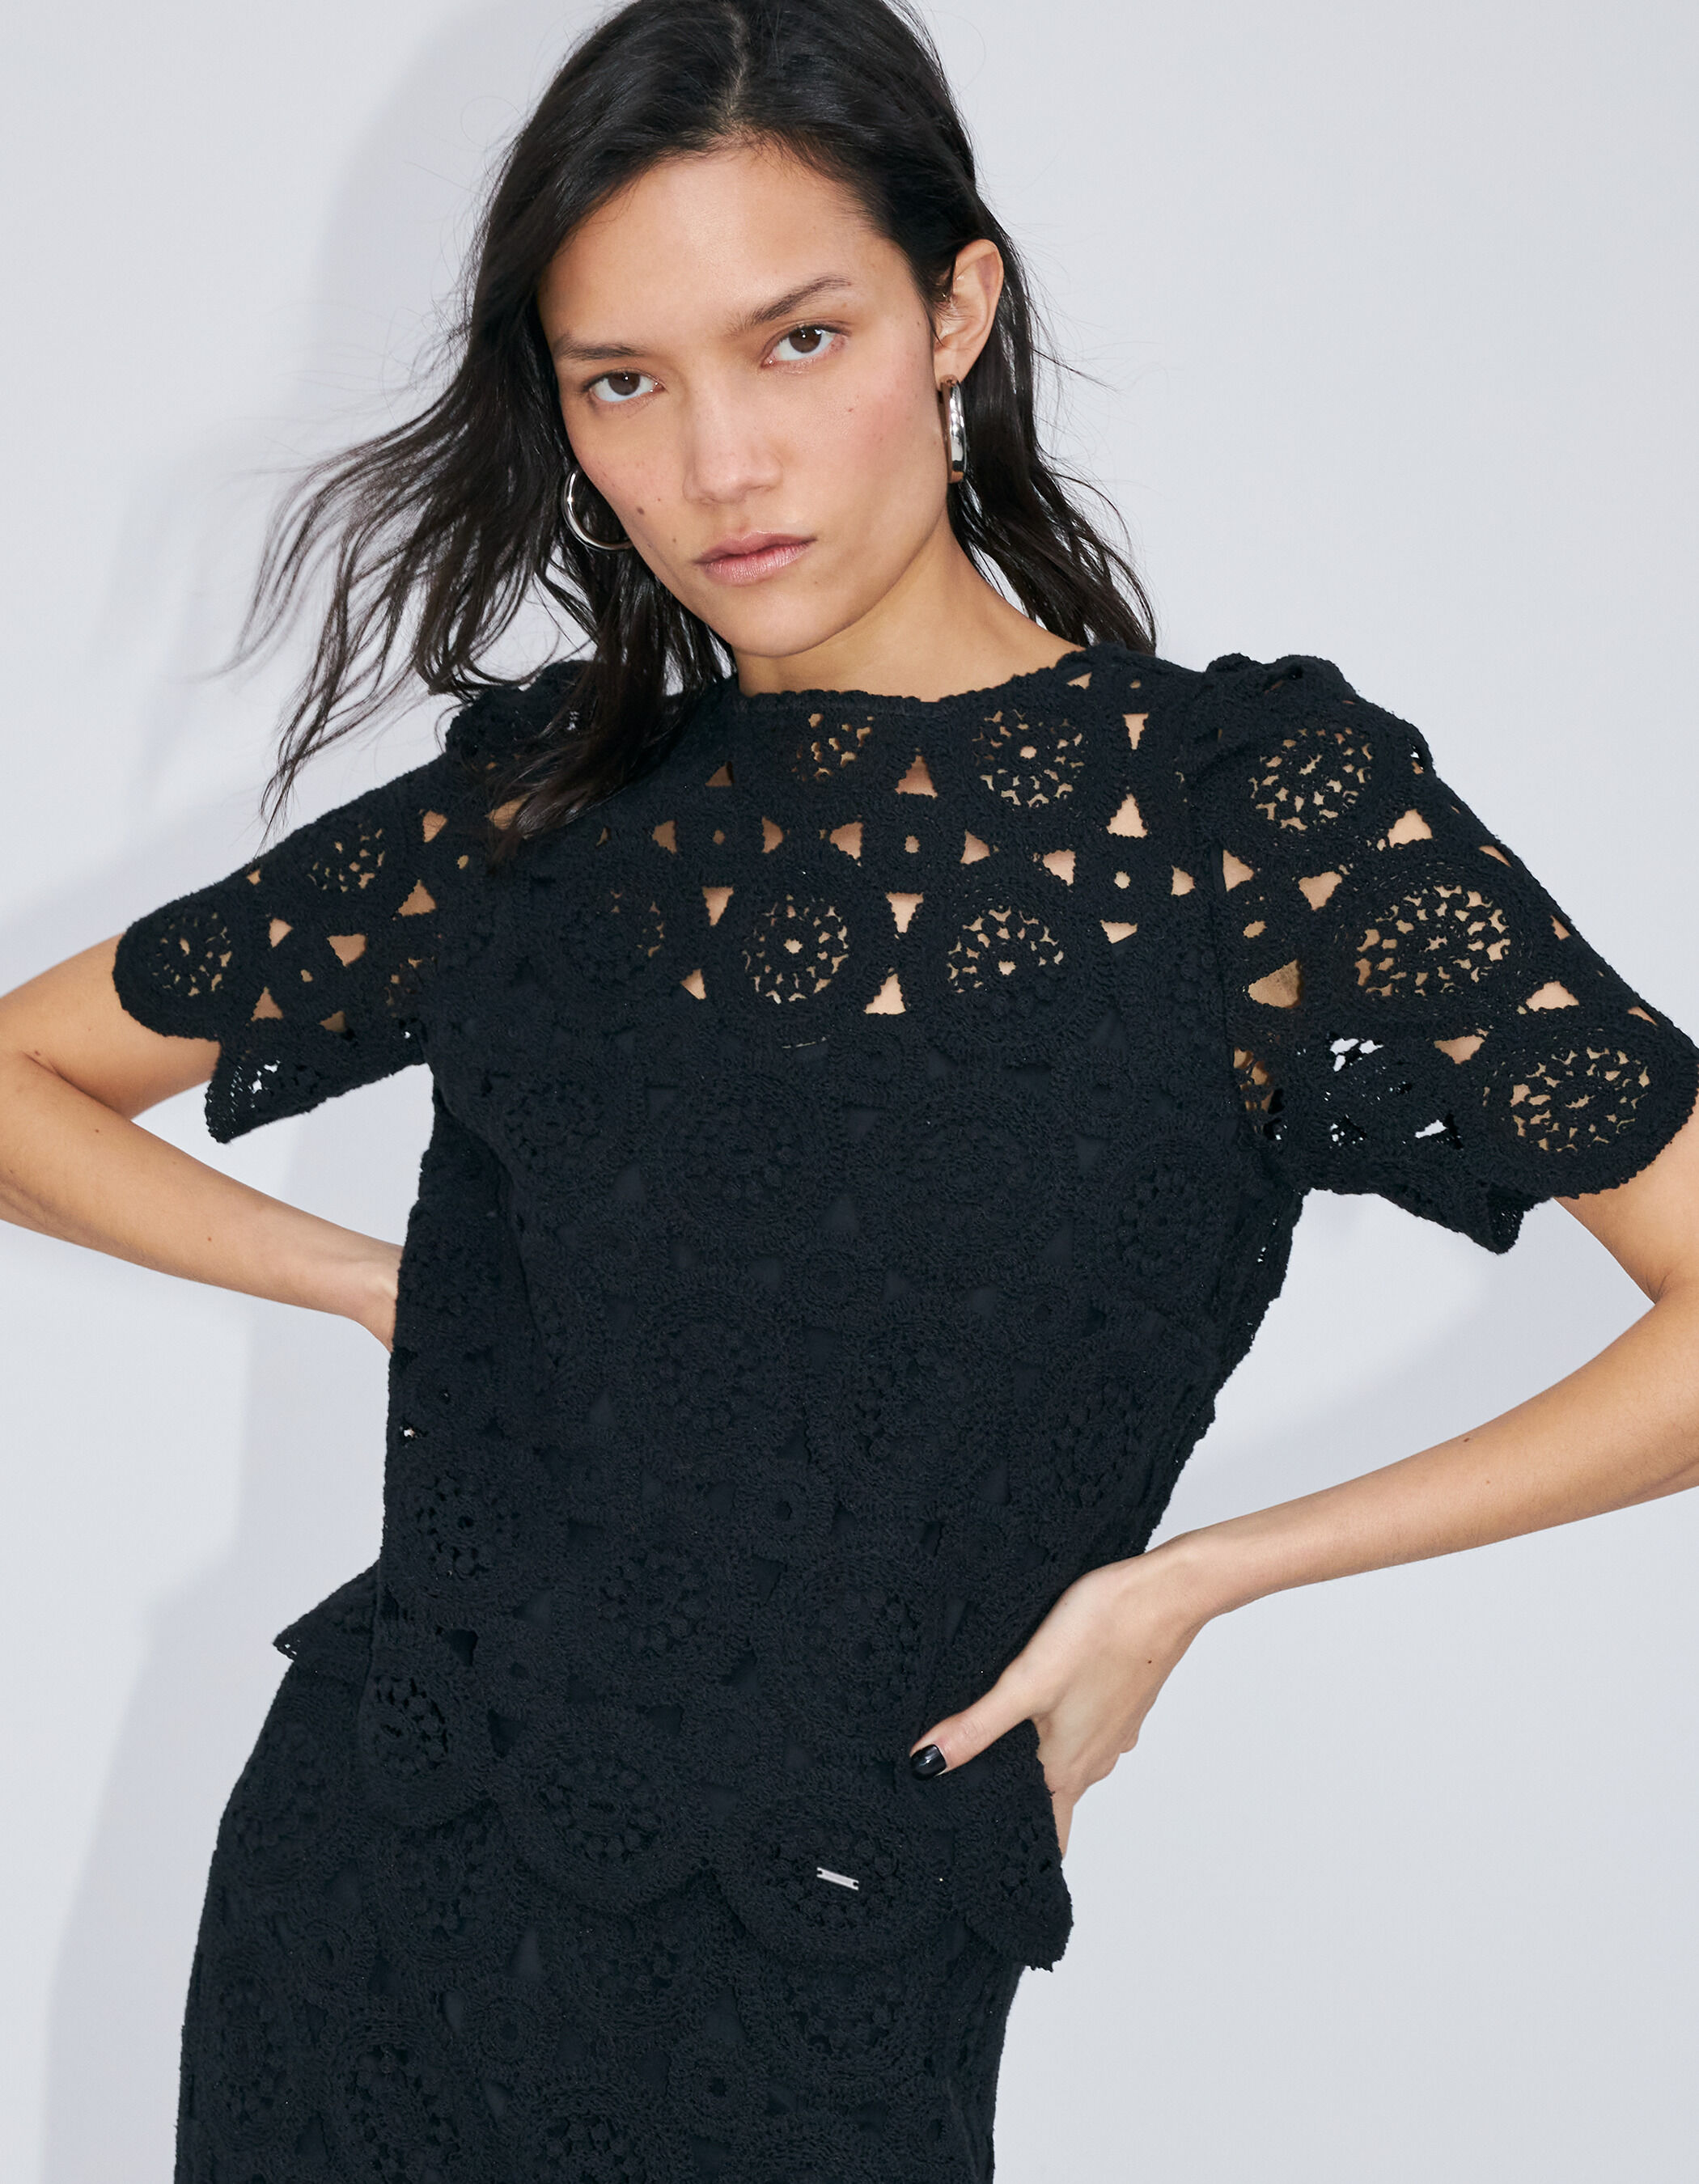 Women's black crochet cropped top